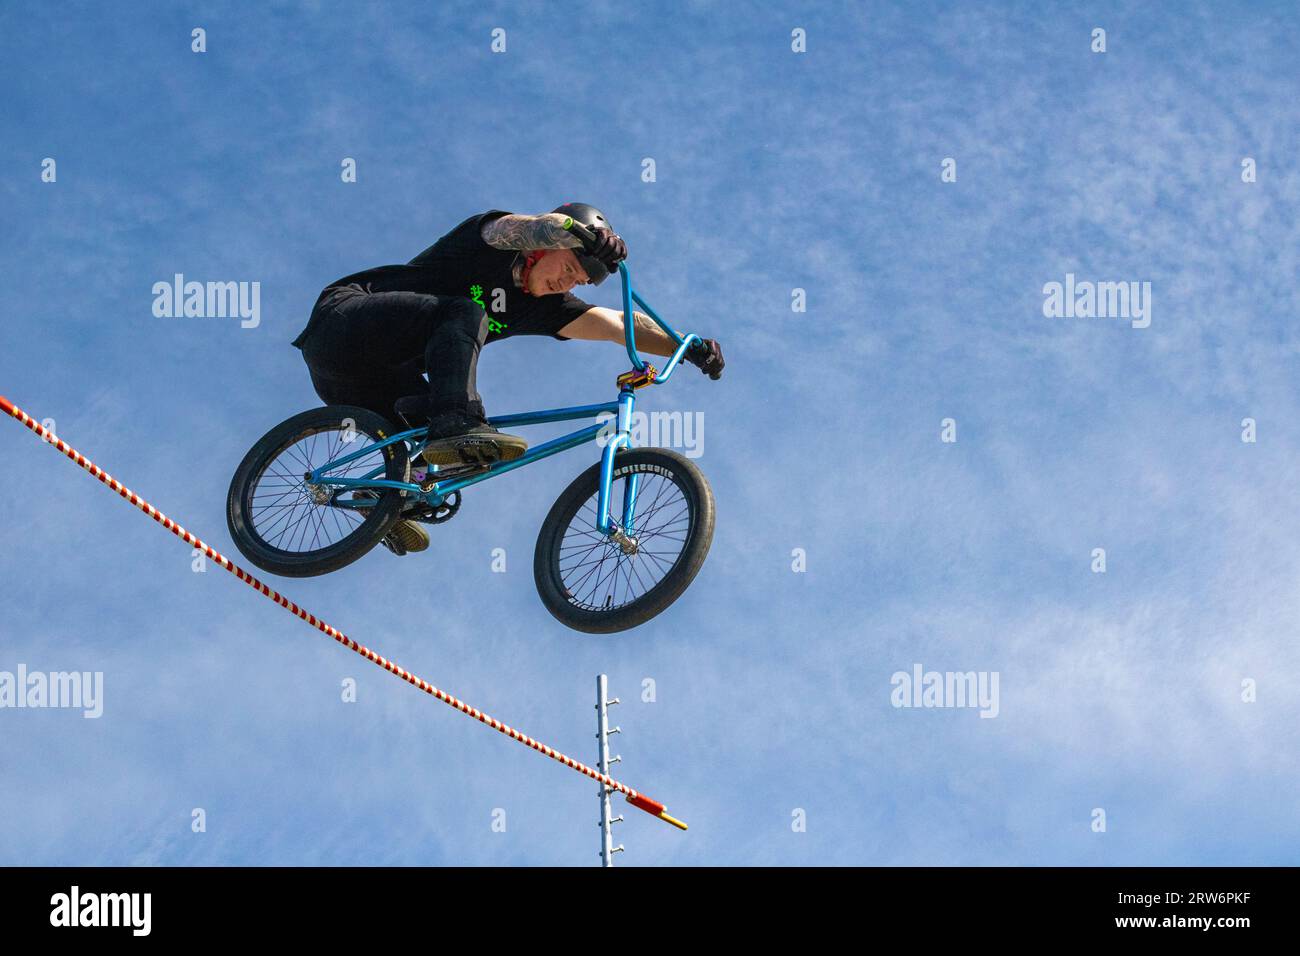 Details eines Airborne BMX Riders in Mid Air gegen einen blauen Himmel, als er einen Hochsprung bei einem aufregenden Wettbewerb auf einem Sommerfestival löst. Stockfoto